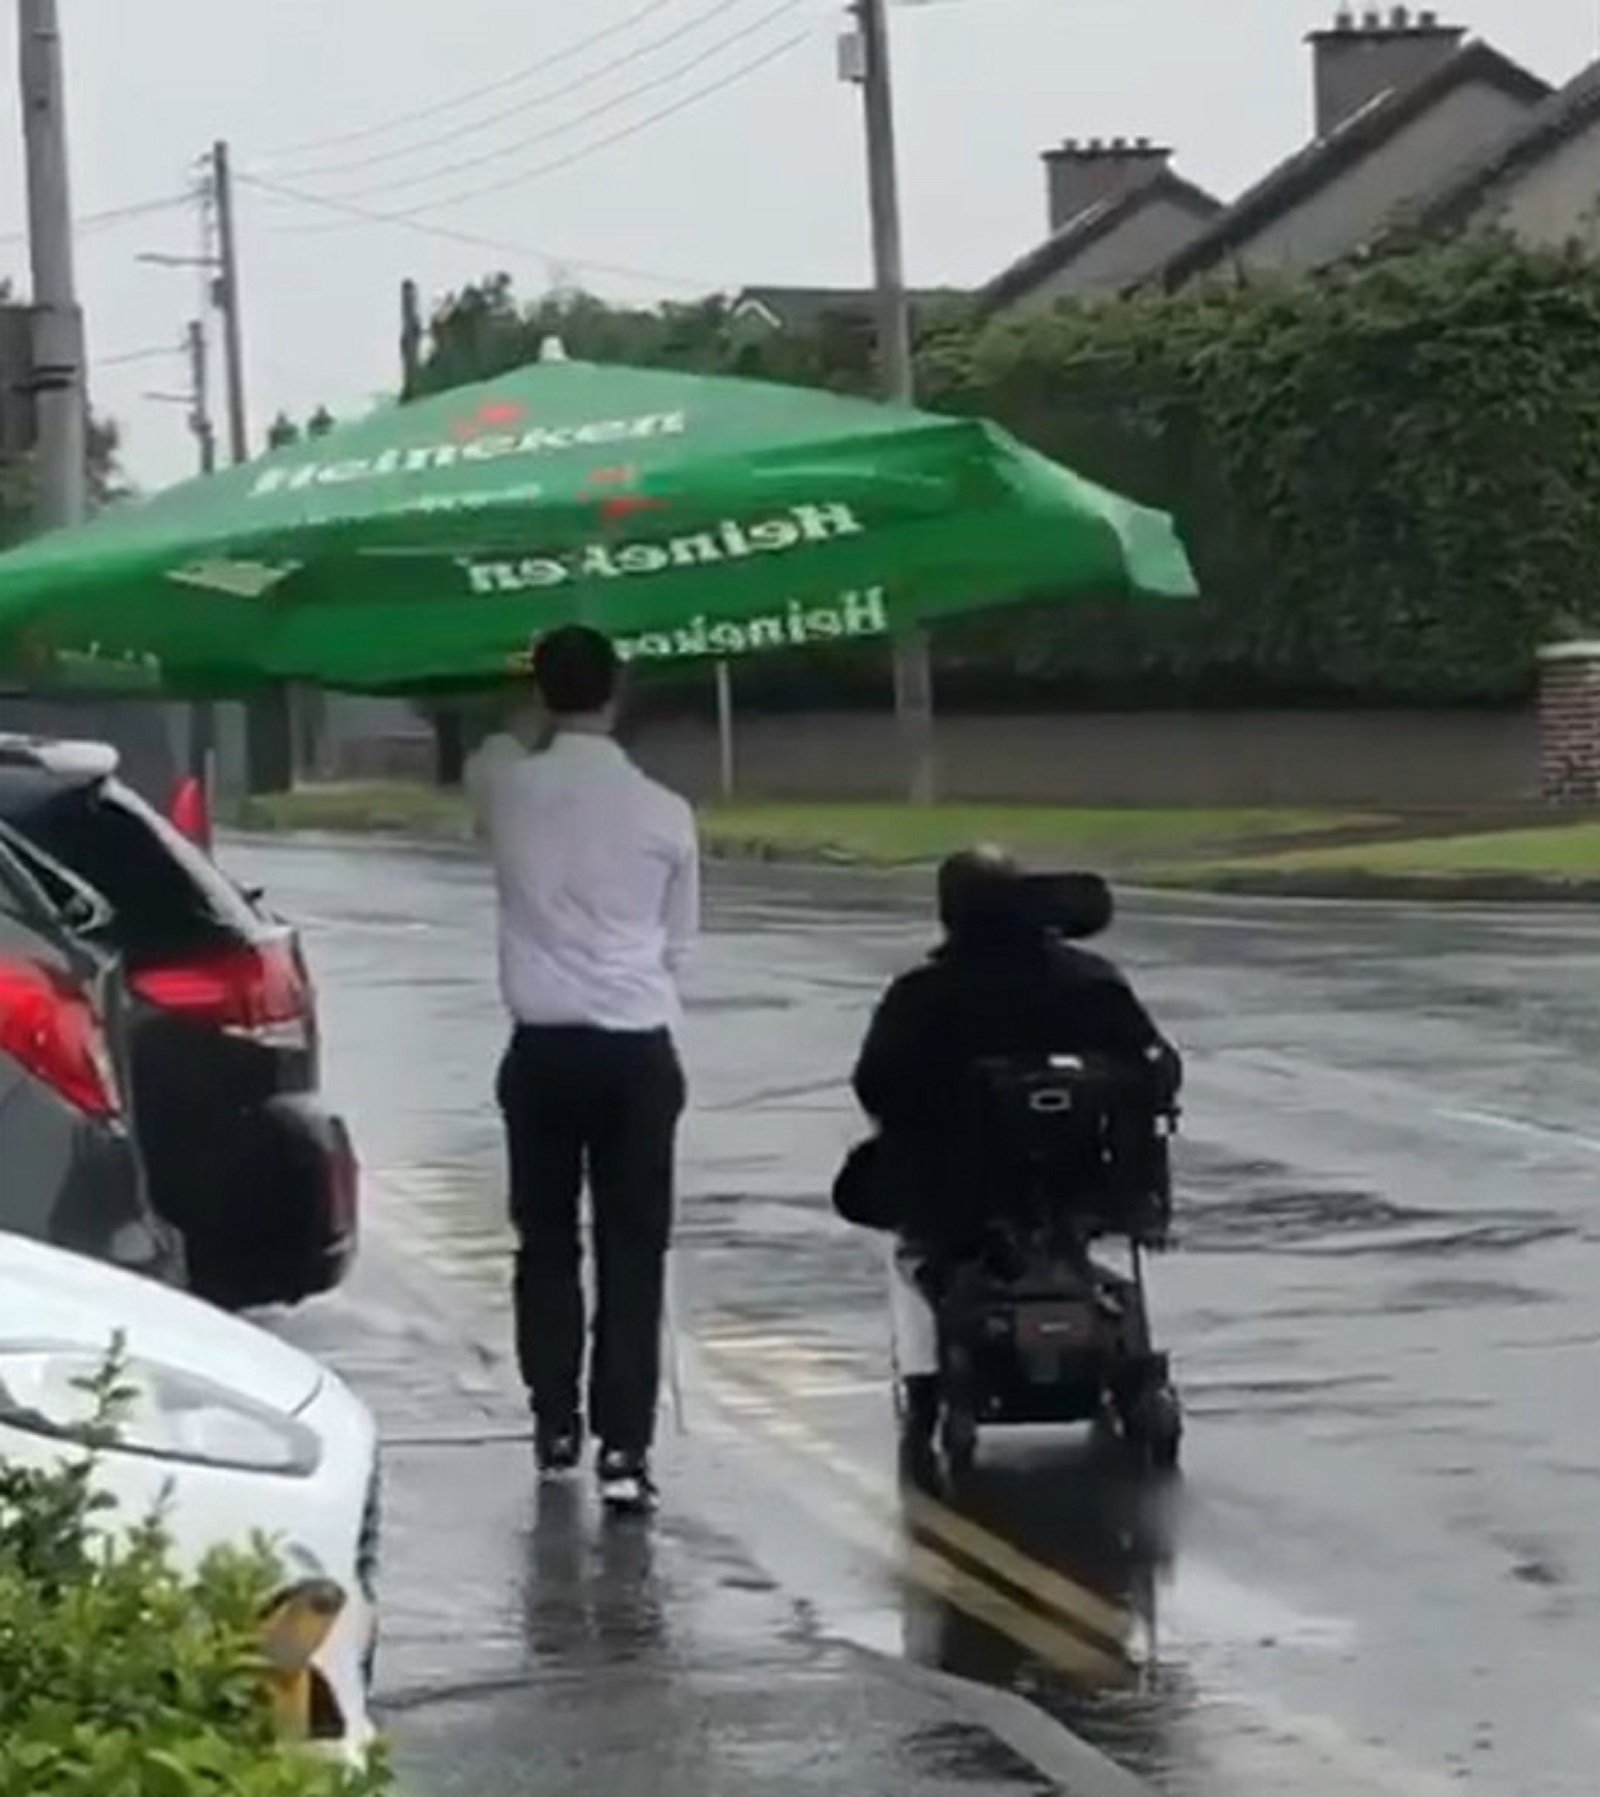 Vídeo: Un camarero protege a un cliente en silla de ruedas durante un temporal